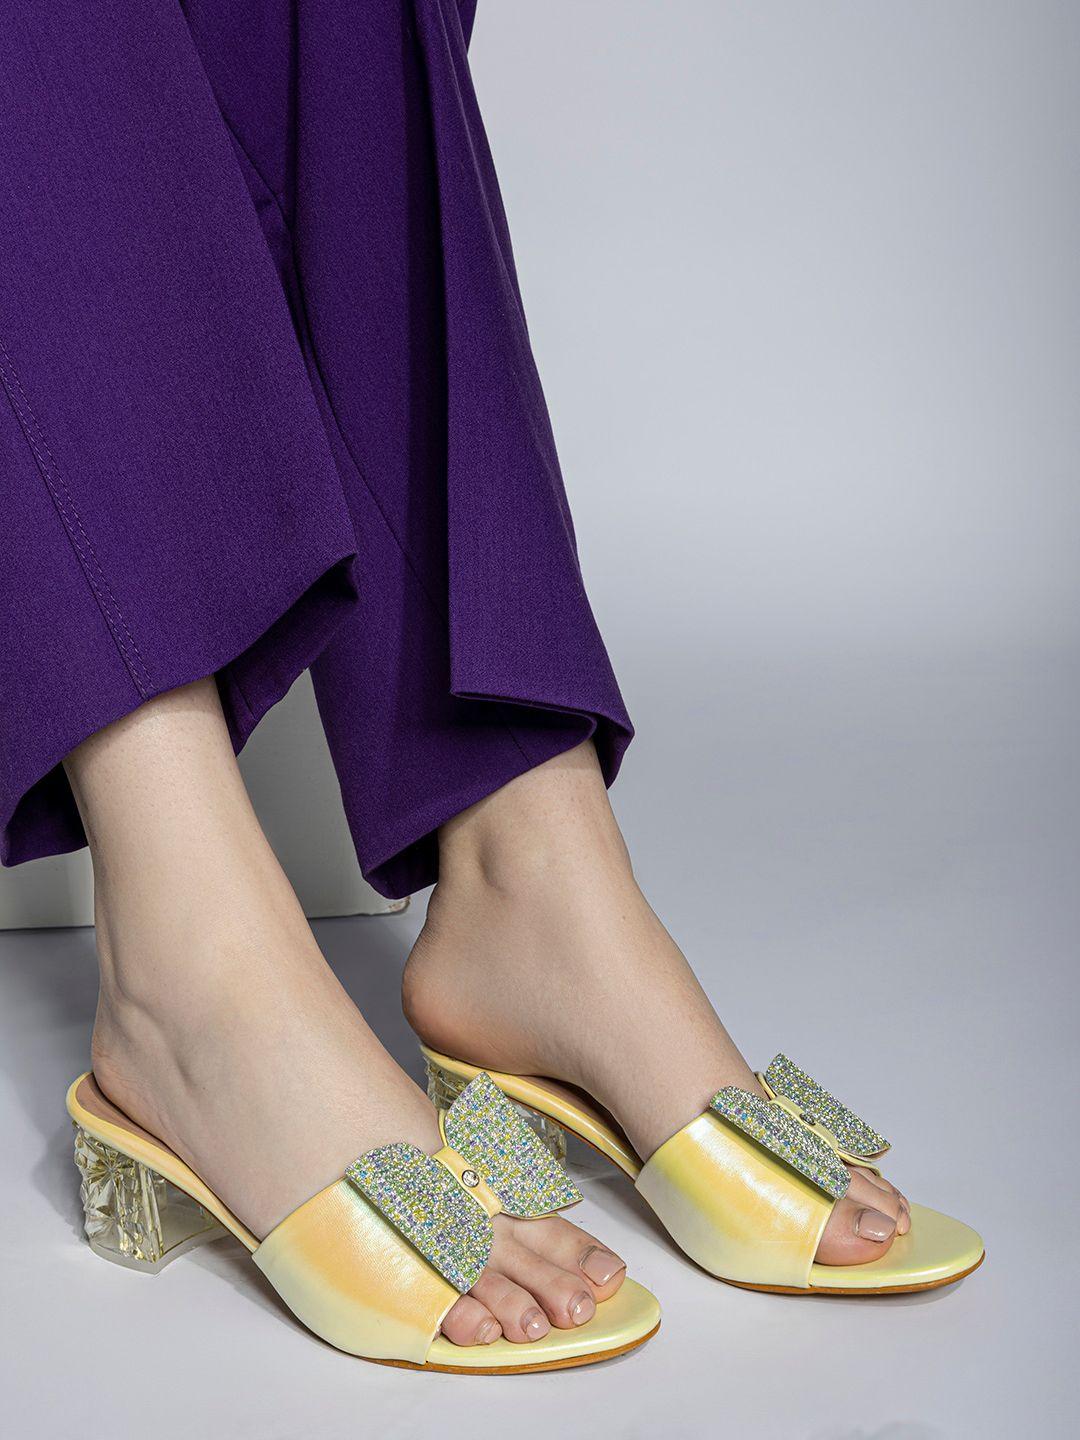 shezone-bow-embellished-block-heels